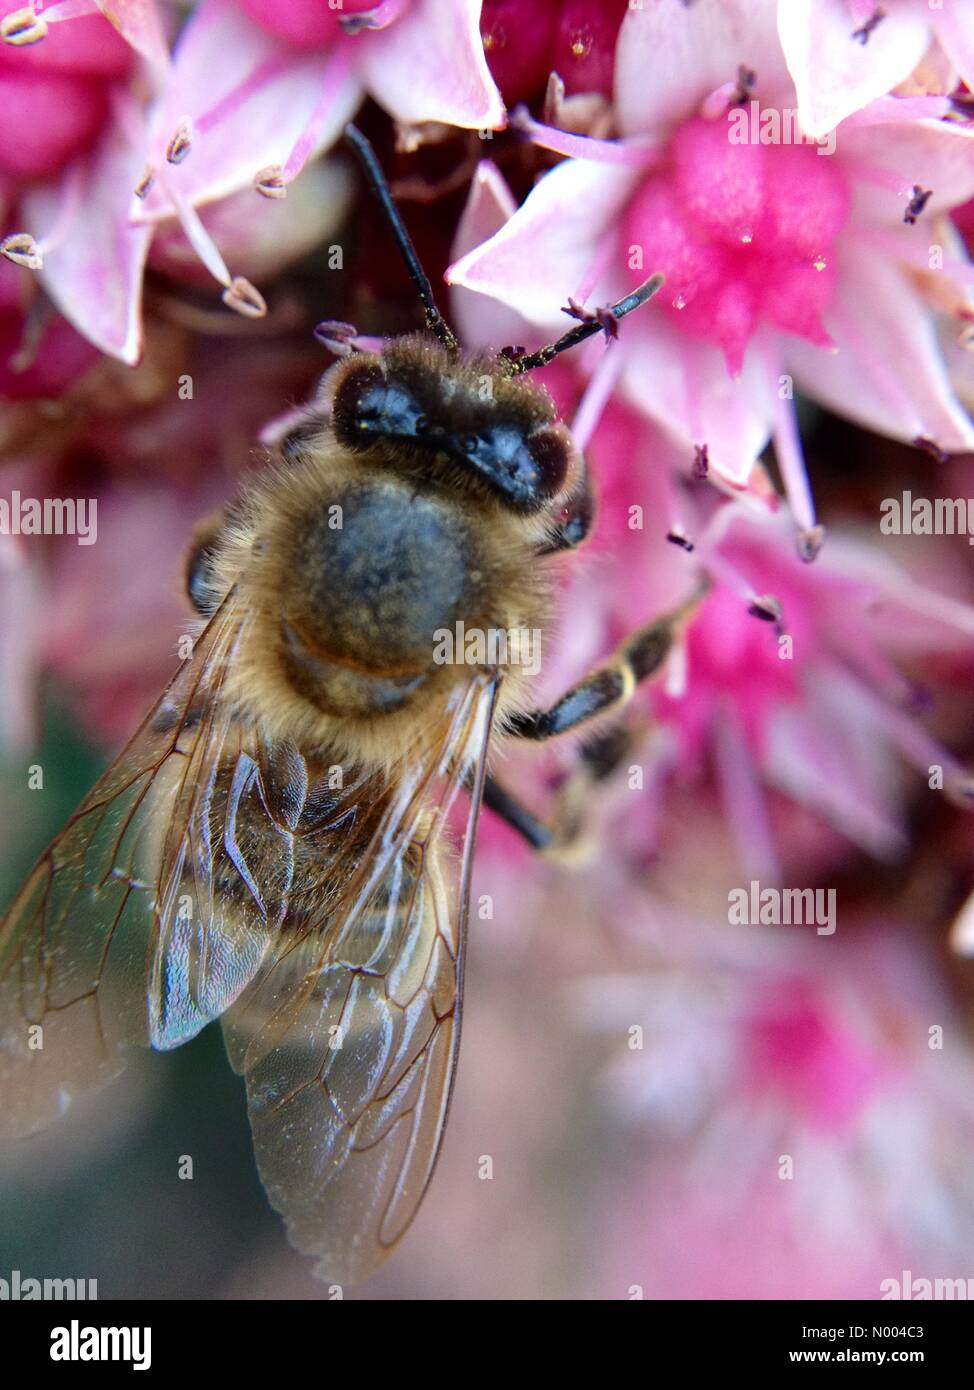 UK-Wetter: Mit bewölktem Himmel waren die Bienen noch damit beschäftigt, Bestäubung im Golden Hektar großen Park in der Nähe von Leeds, West Yorkshire. Aufgenommen am 17. September 2015. Stockfoto